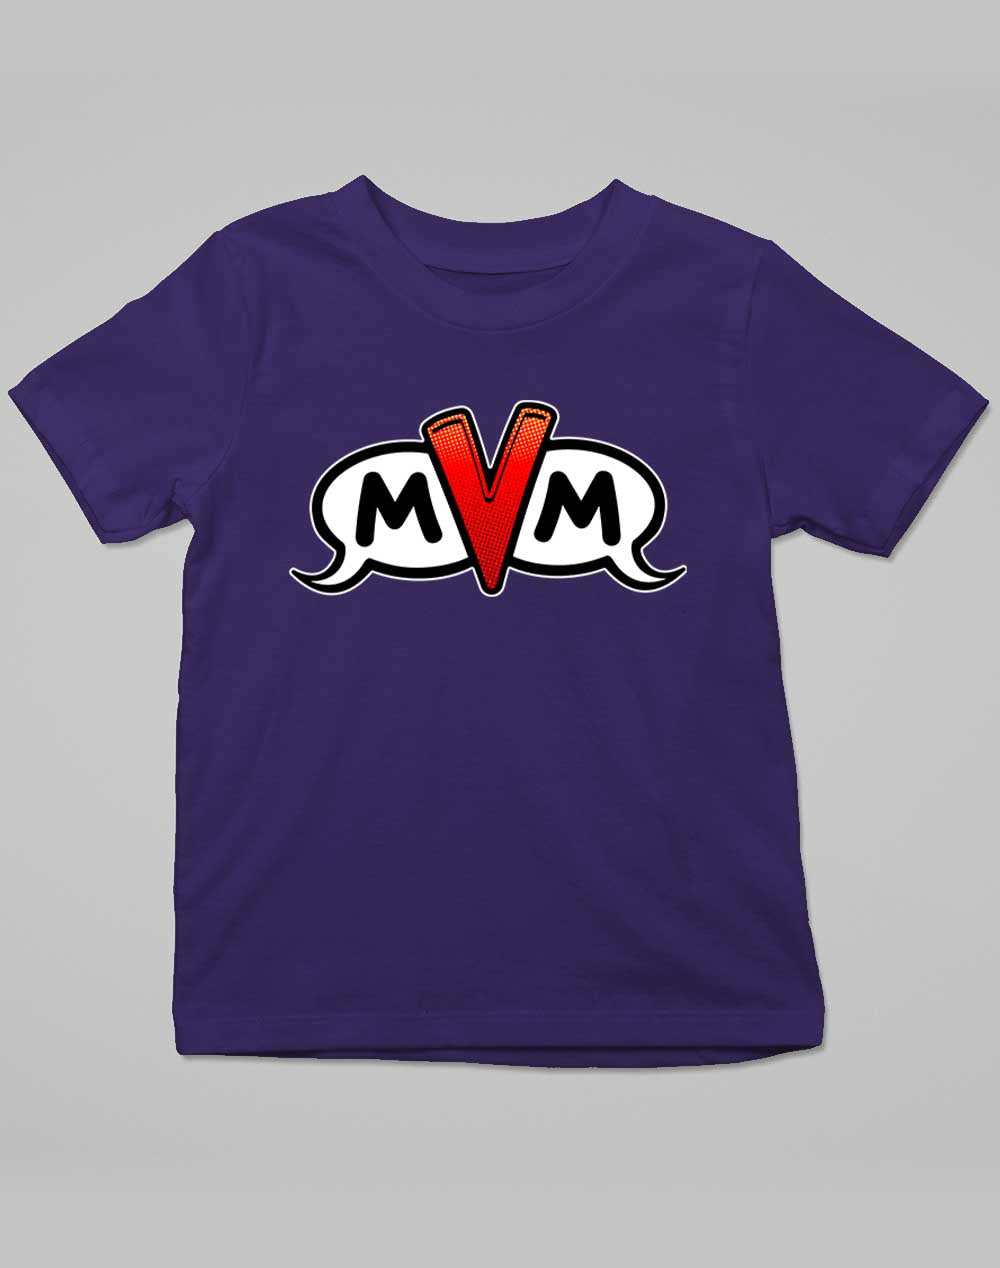 Navy - MvM Logo Kids T-Shirt